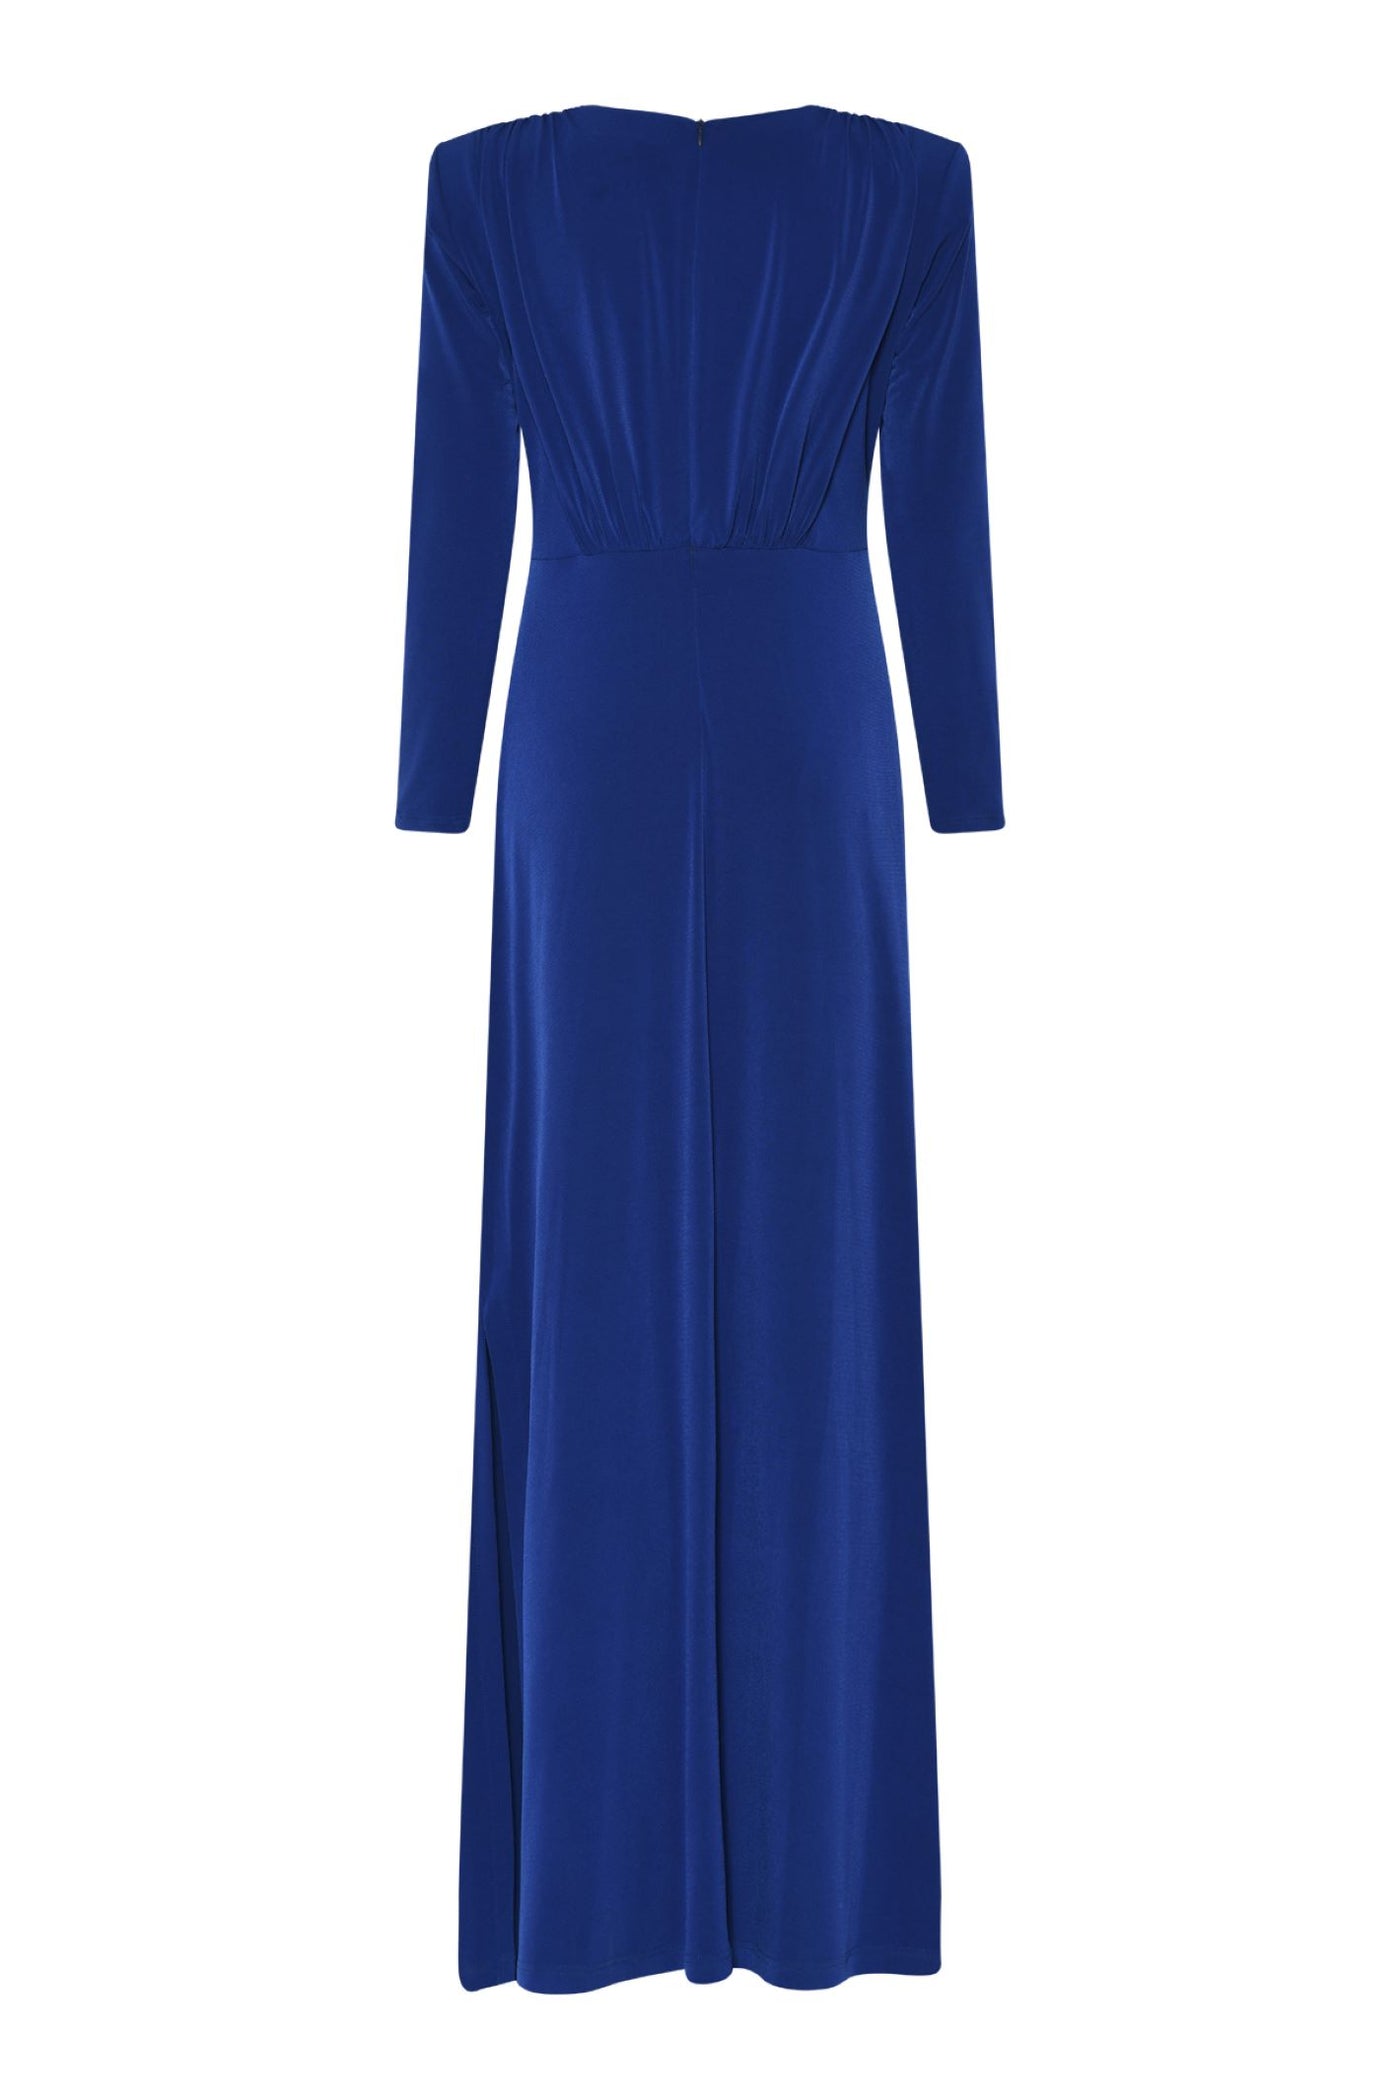 Tia 78673 Royal Blue Maxi Sleeved Evening Dress